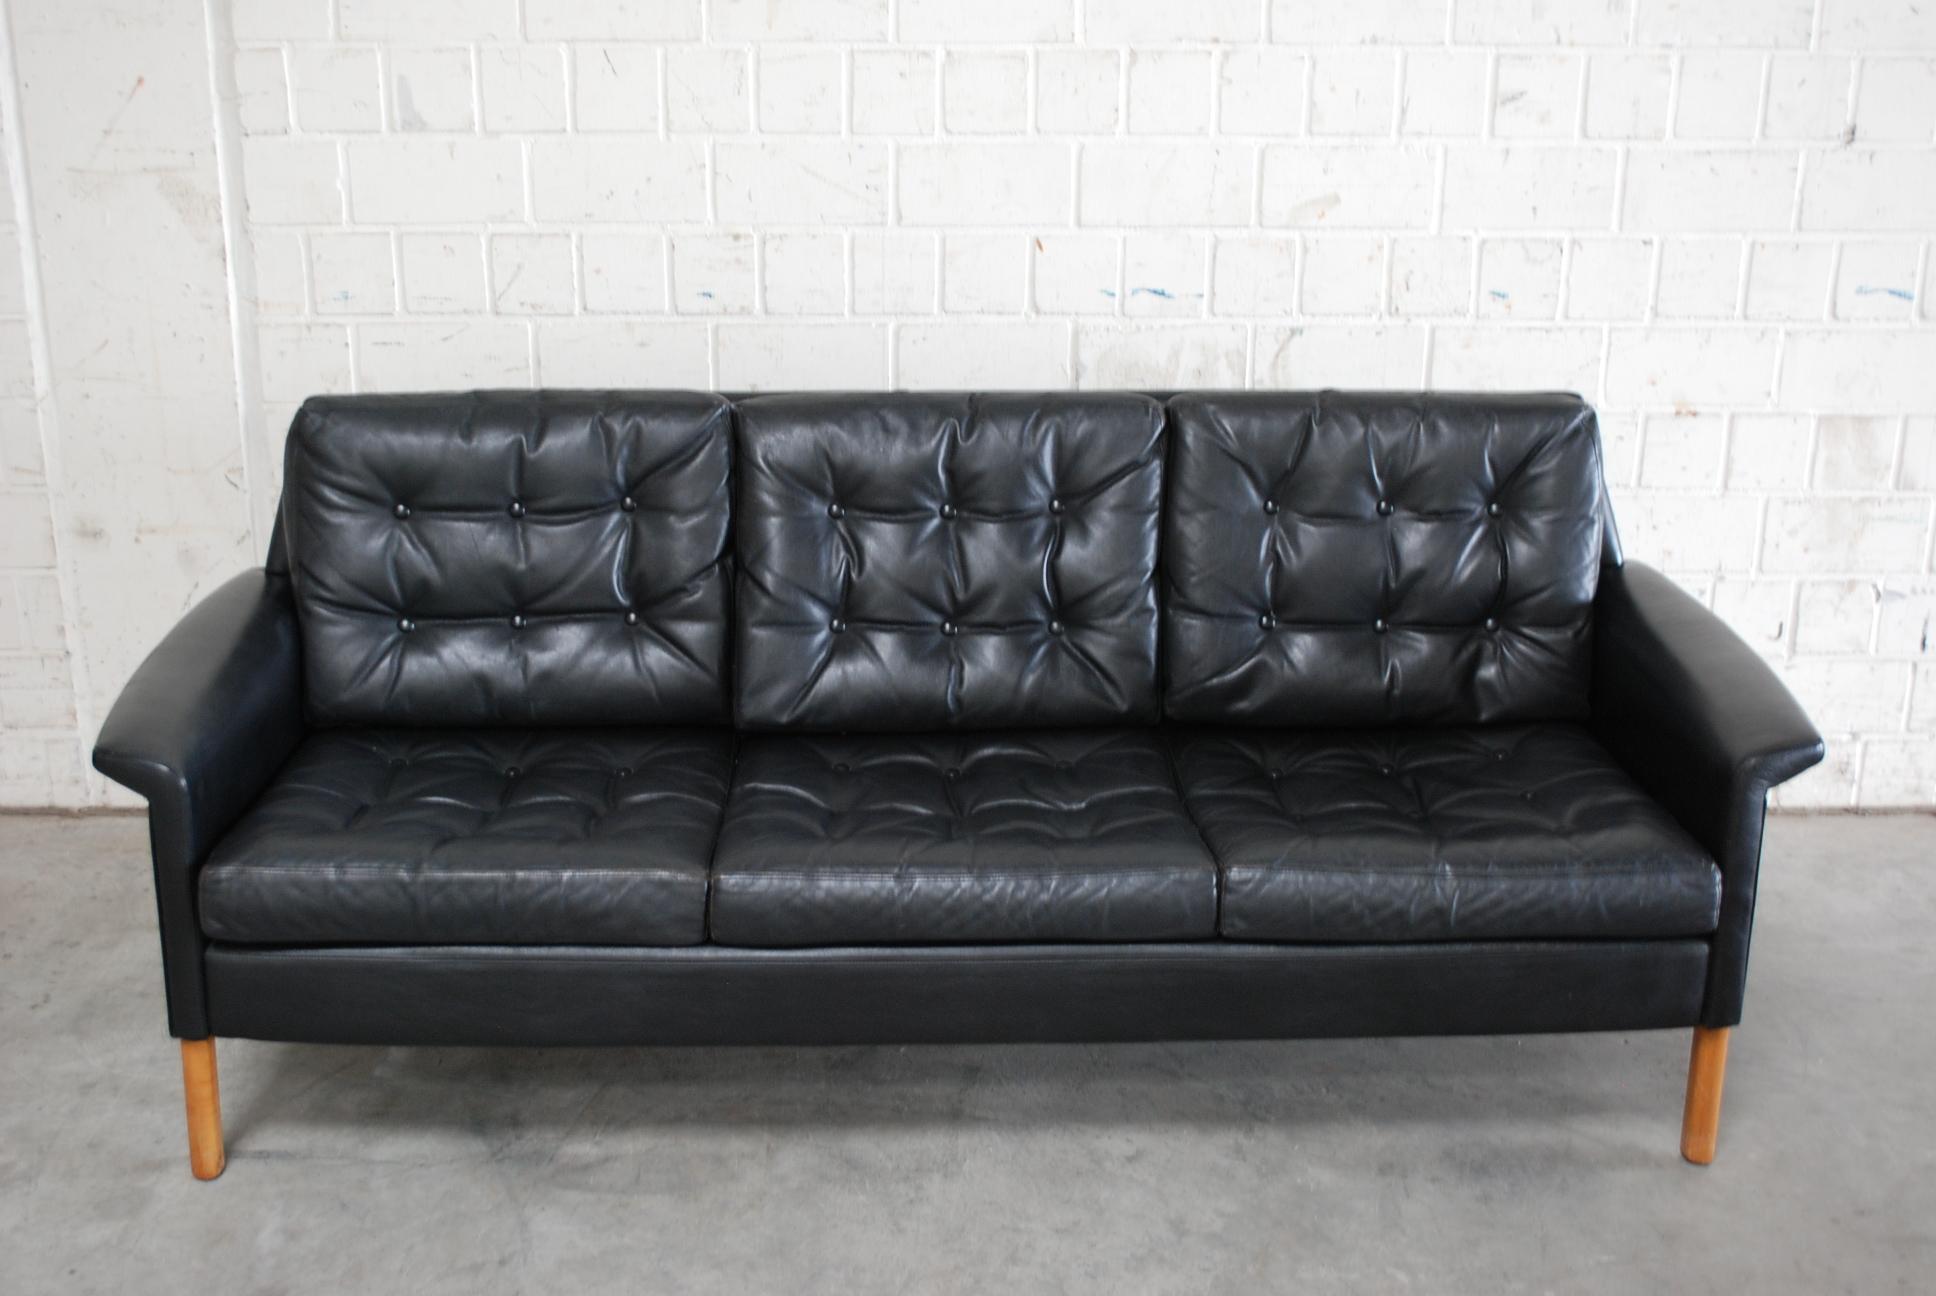 Schwarzes Ledersofa von Rudolf Glatzel, hergestellt von der deutschen Firma Kill International.
Großartiges Design aus den 1960er Jahren.
Wir haben auch 2 Sessel, die gut zu diesem Sofa passen.